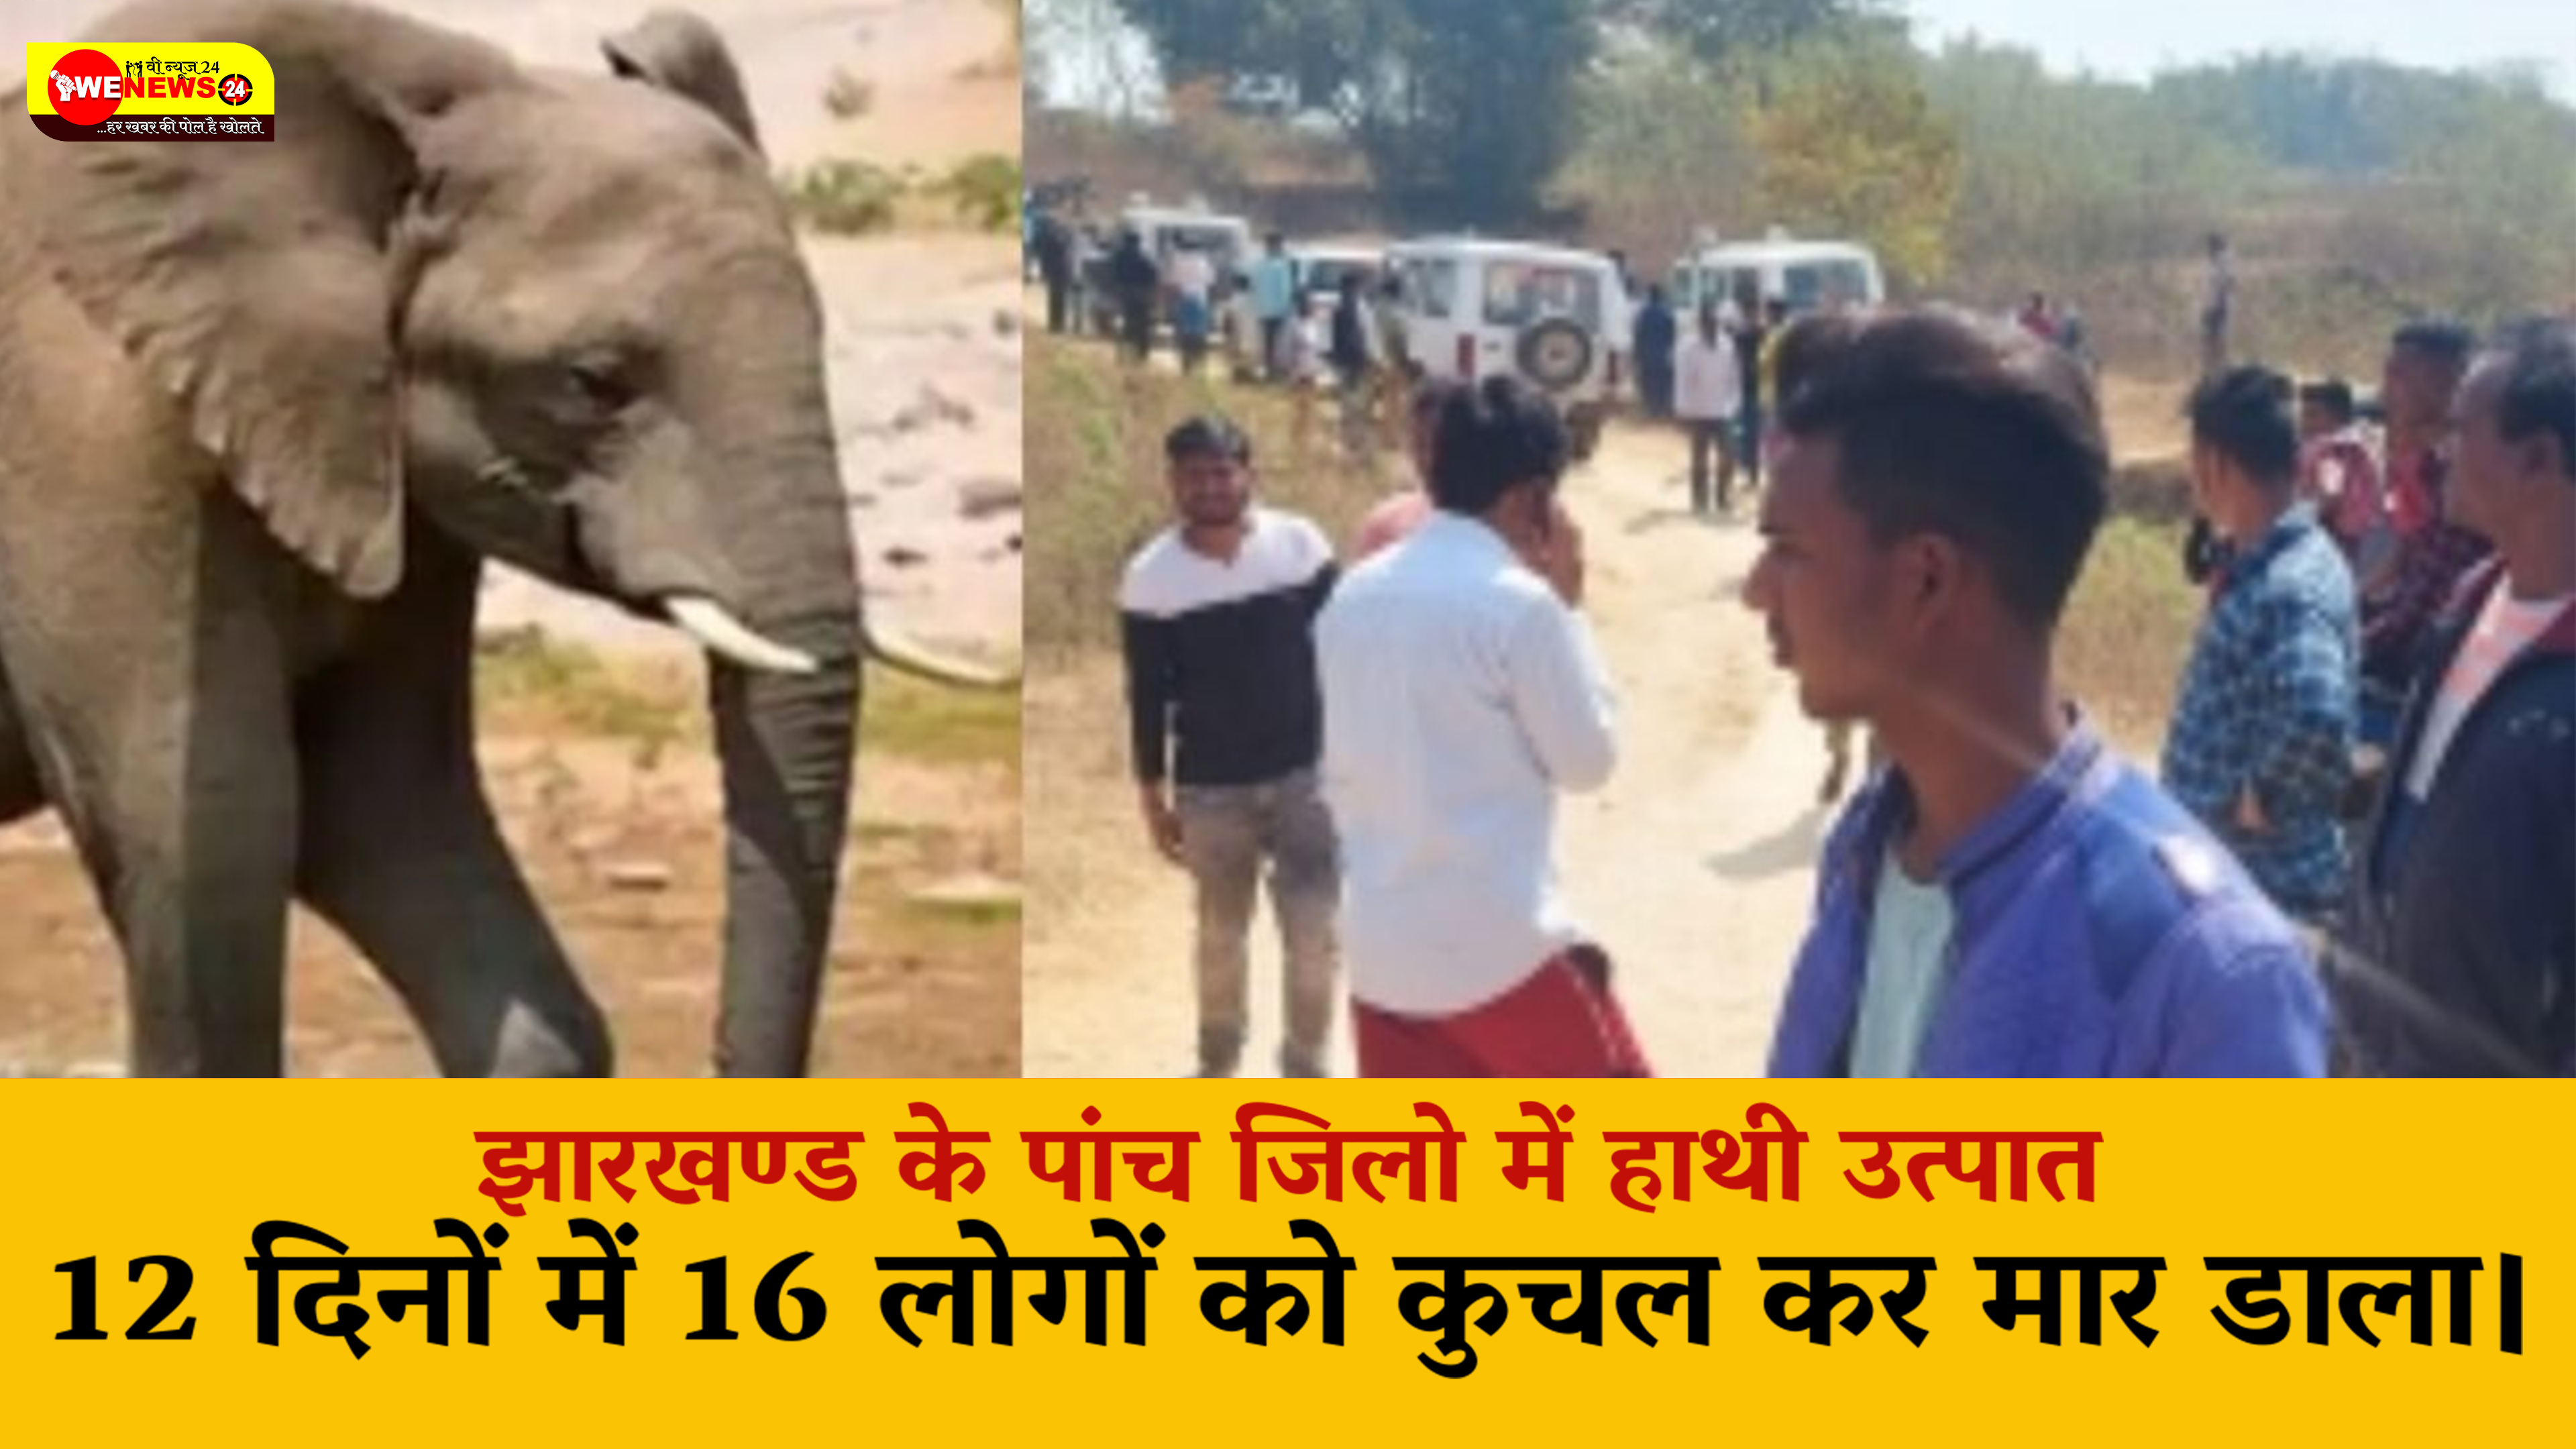 झारखंड में आवारा हाथी ने मचाया उत्पात , 12 दिनों में पांच जिलों के 16 लोगों को कुचल कर मार डाला।